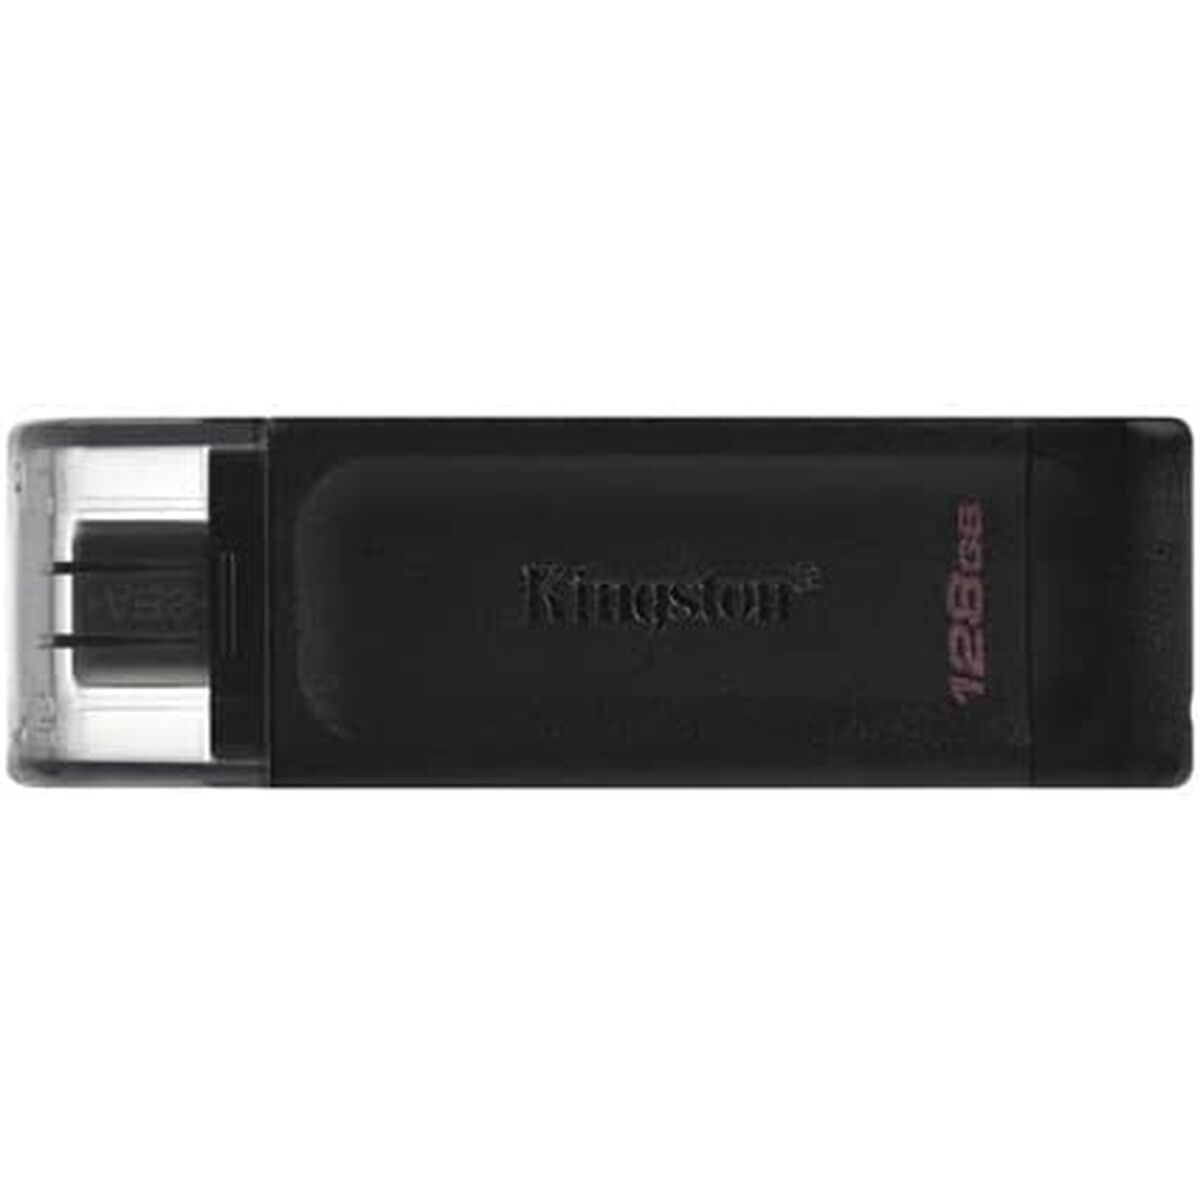 USB stick Kingston 70 Black 128 GB